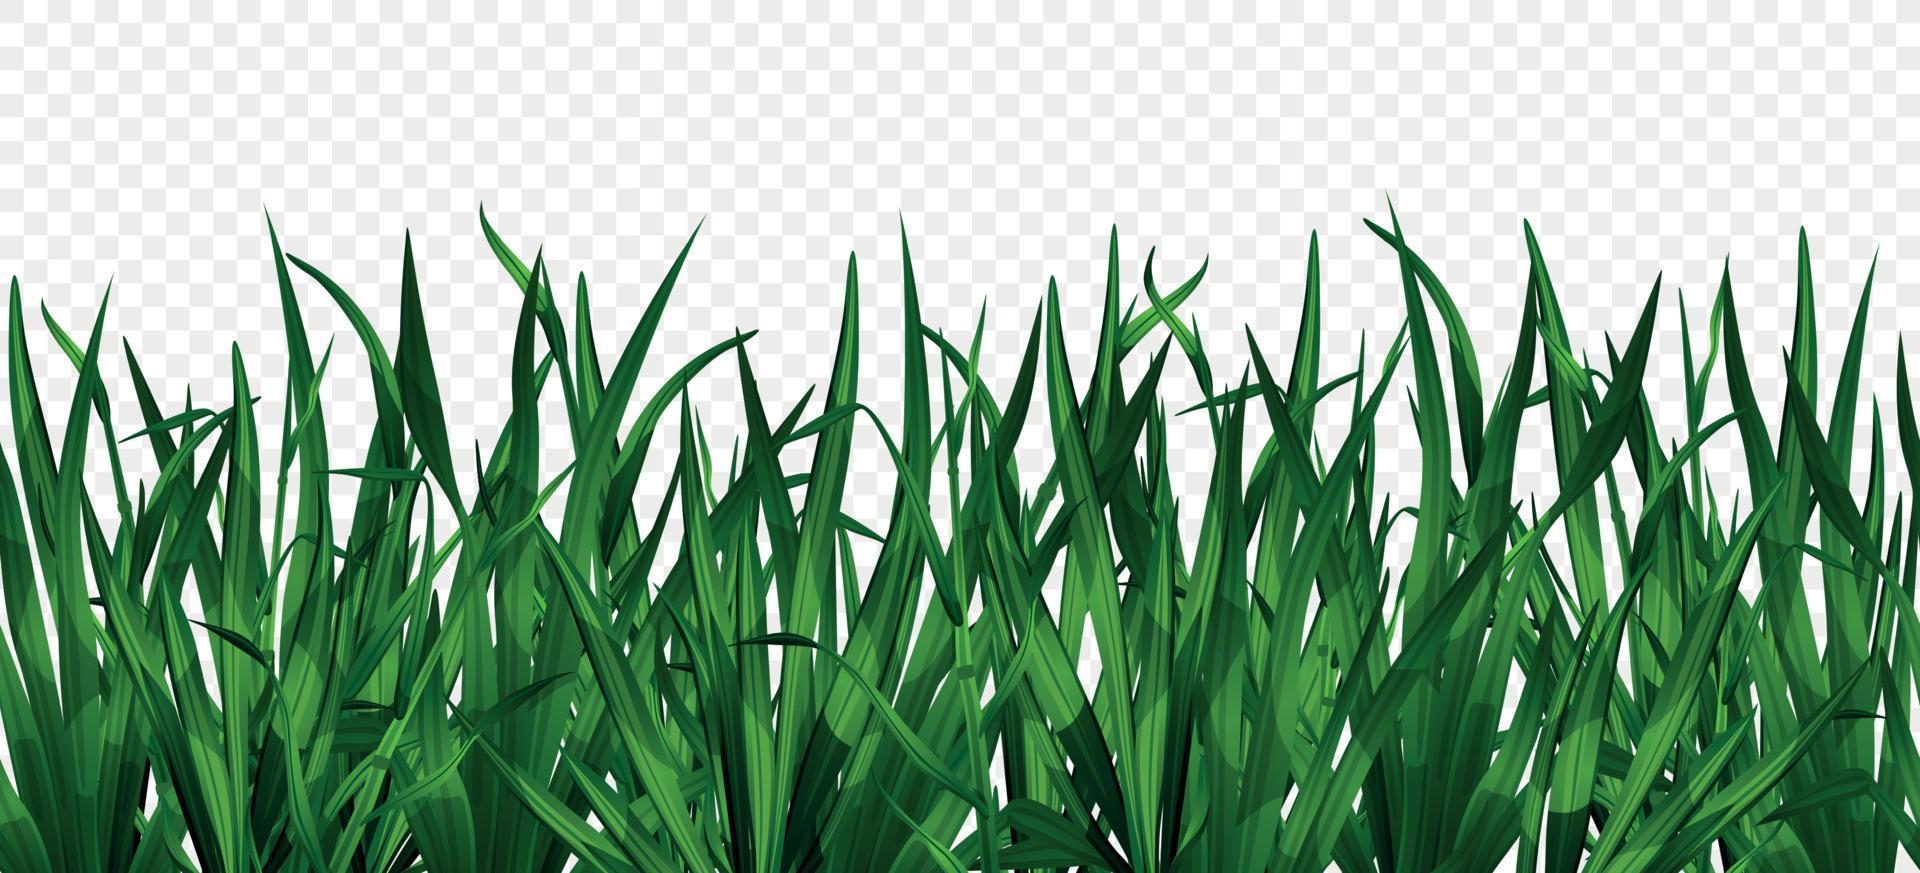 Green Grass Background vector